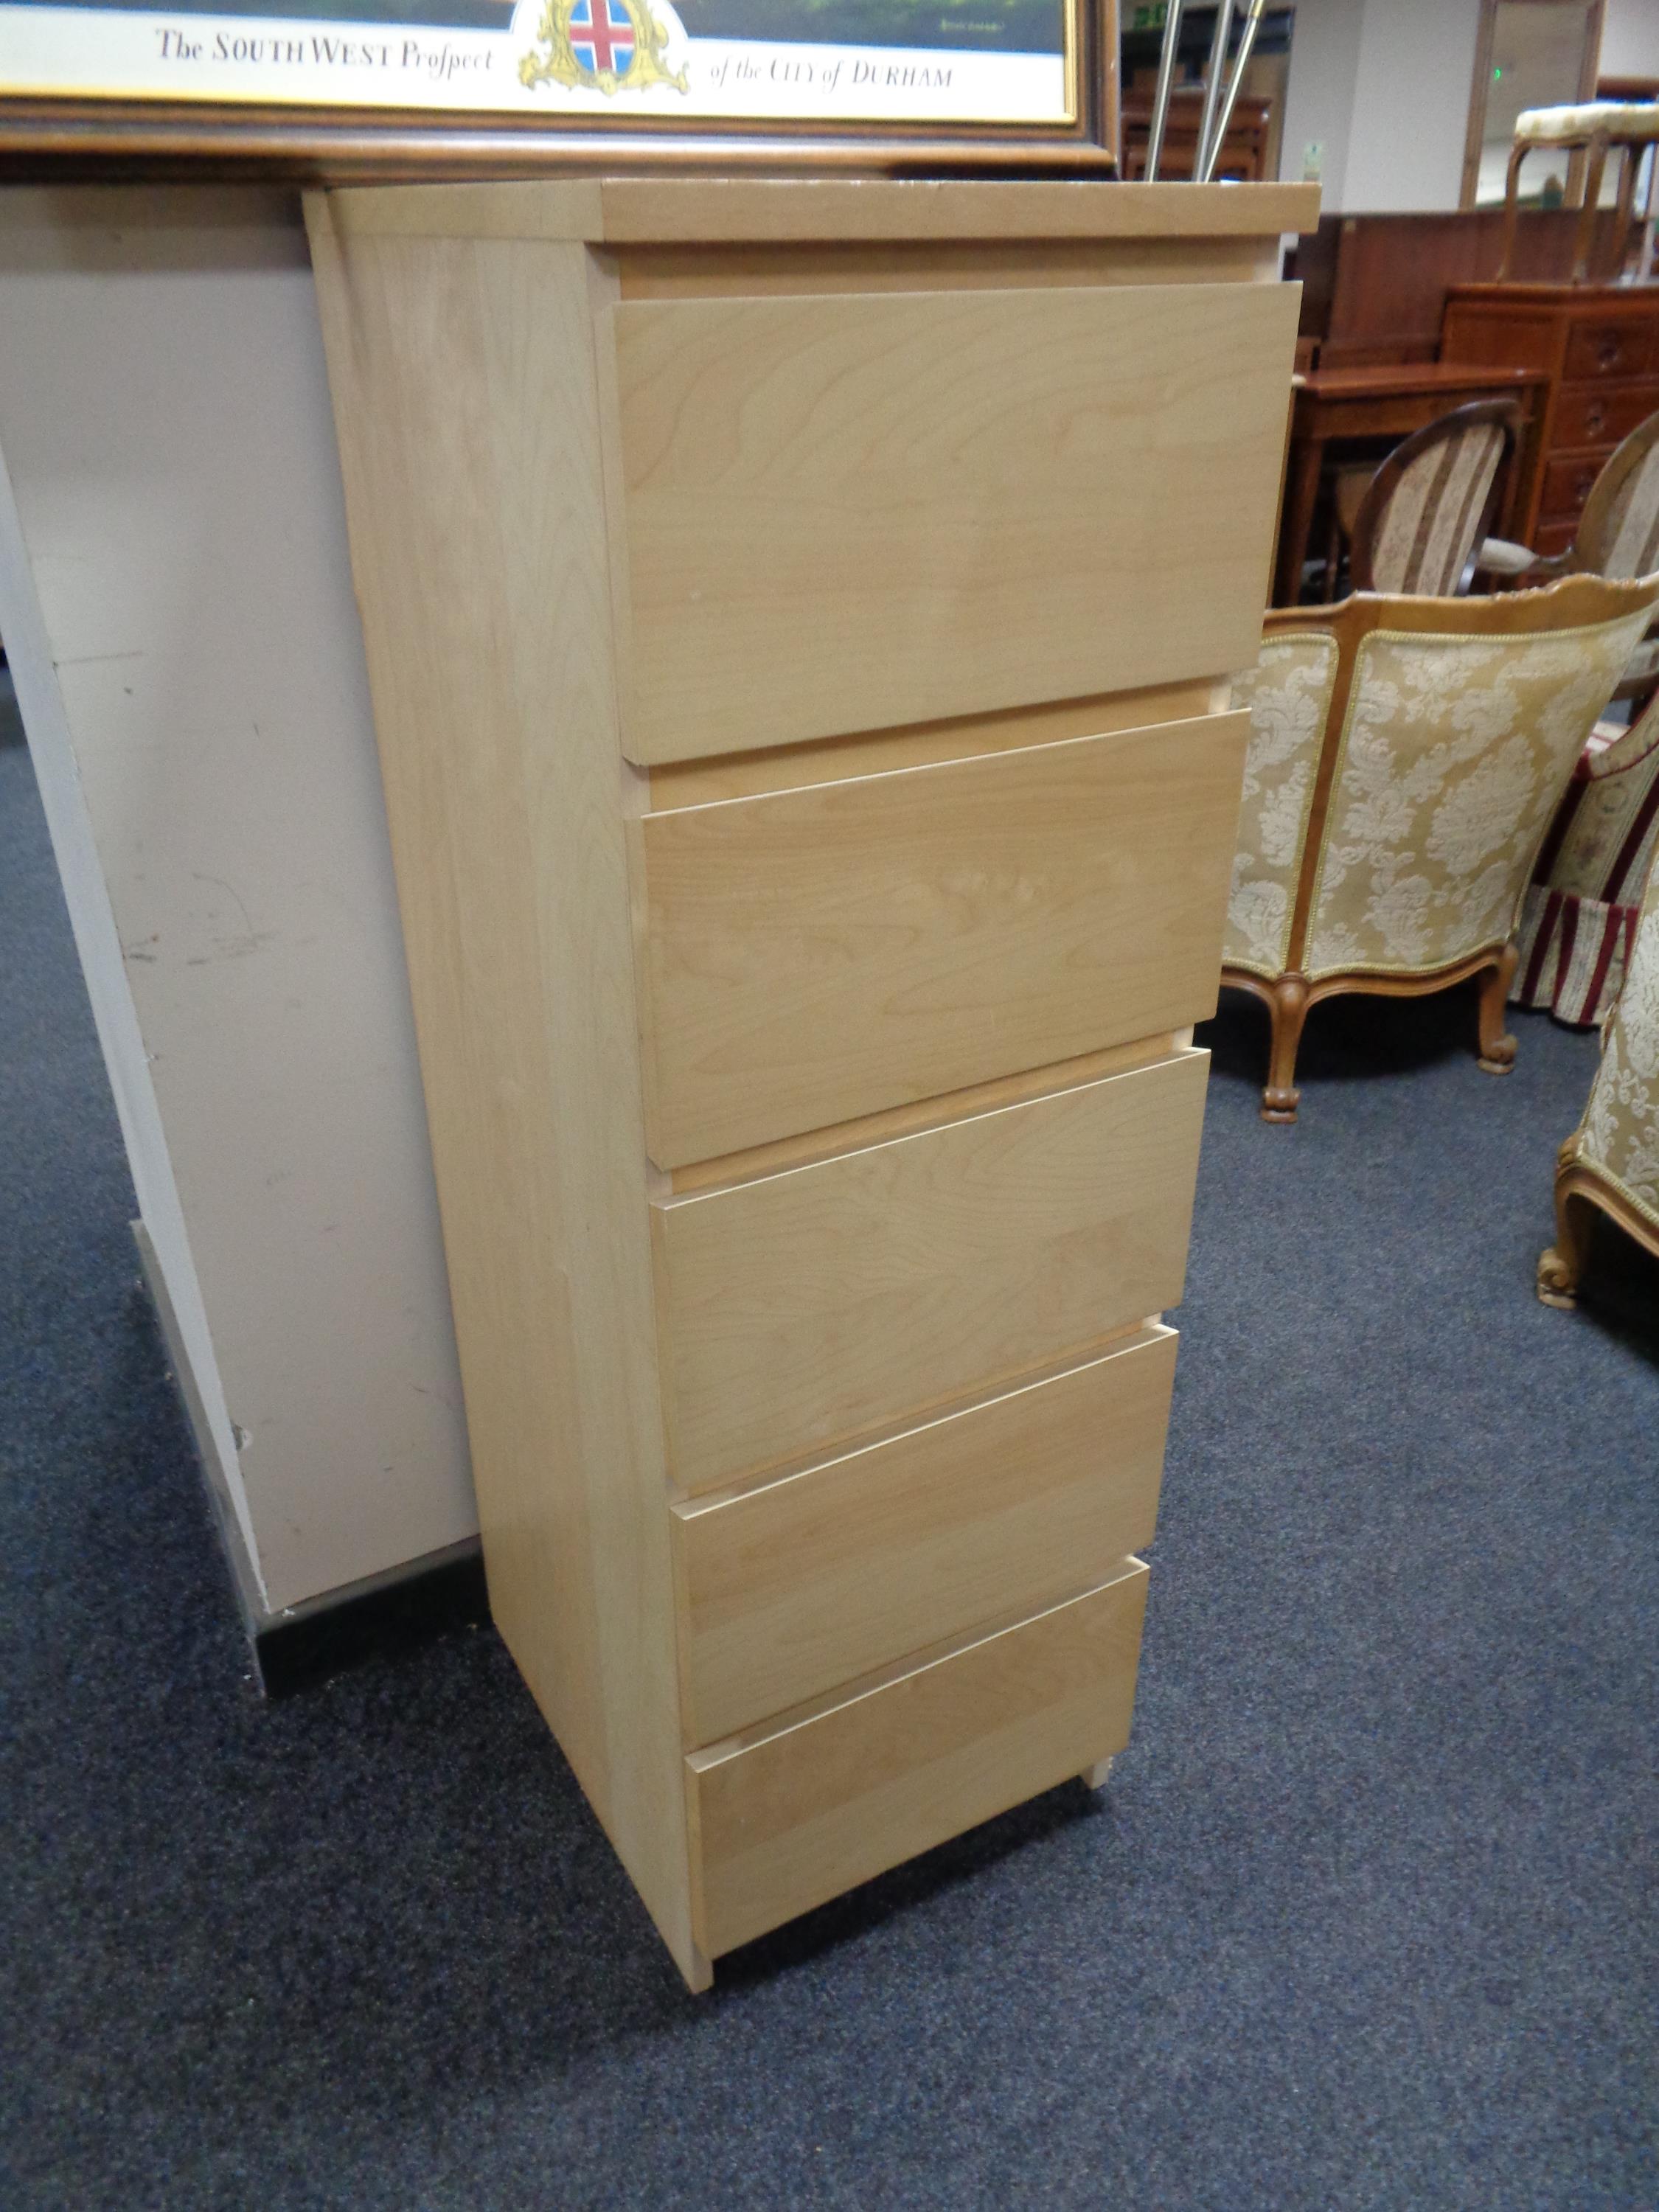 An Ikea beech five drawer chest